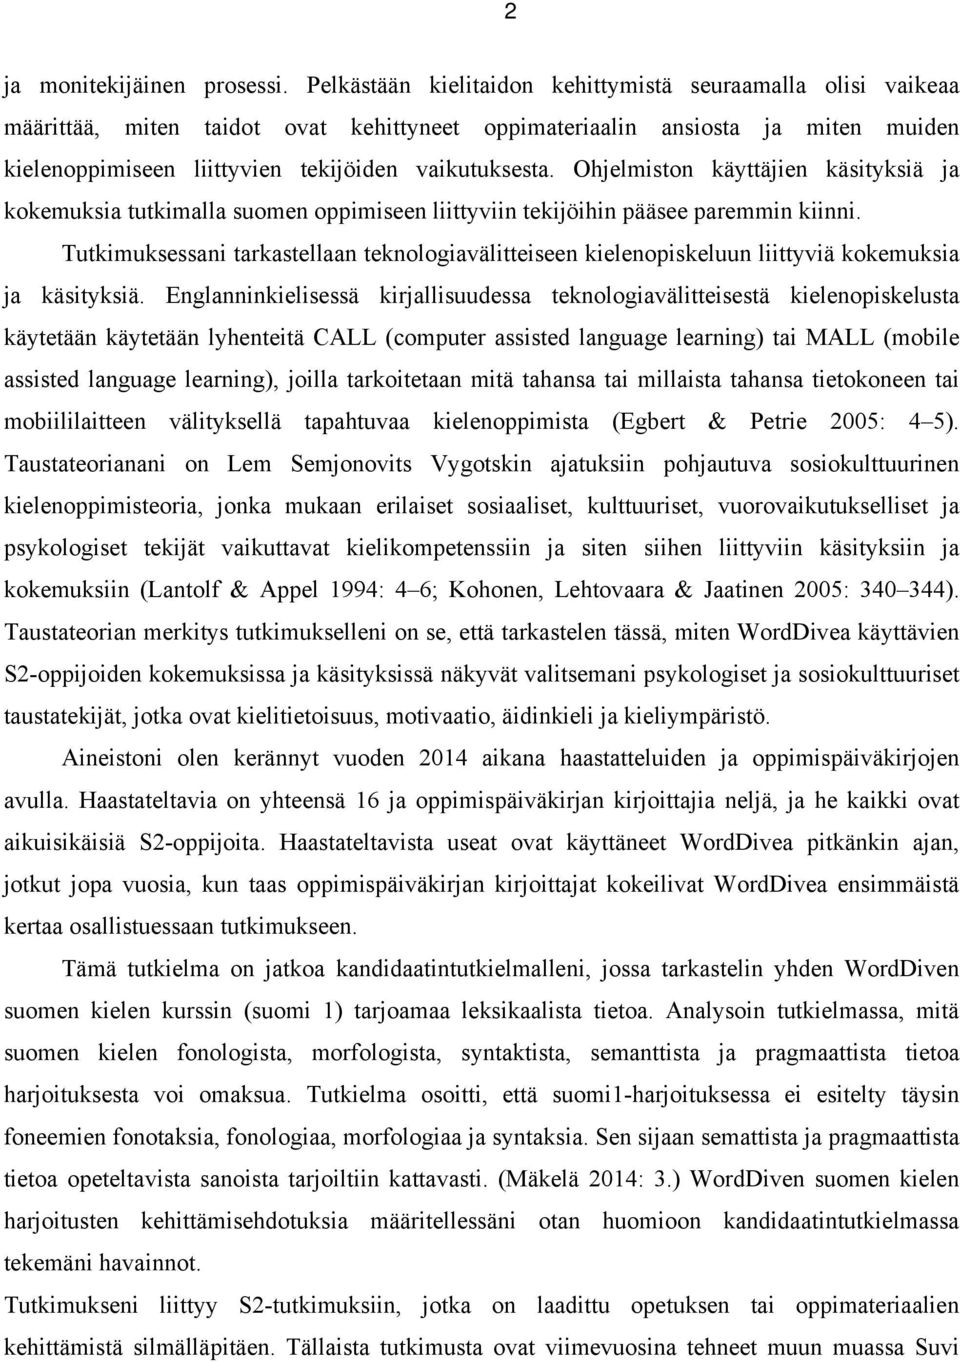 Ohjelmiston käyttäjien käsityksiä ja kokemuksia tutkimalla suomen oppimiseen liittyviin tekijöihin pääsee paremmin kiinni.